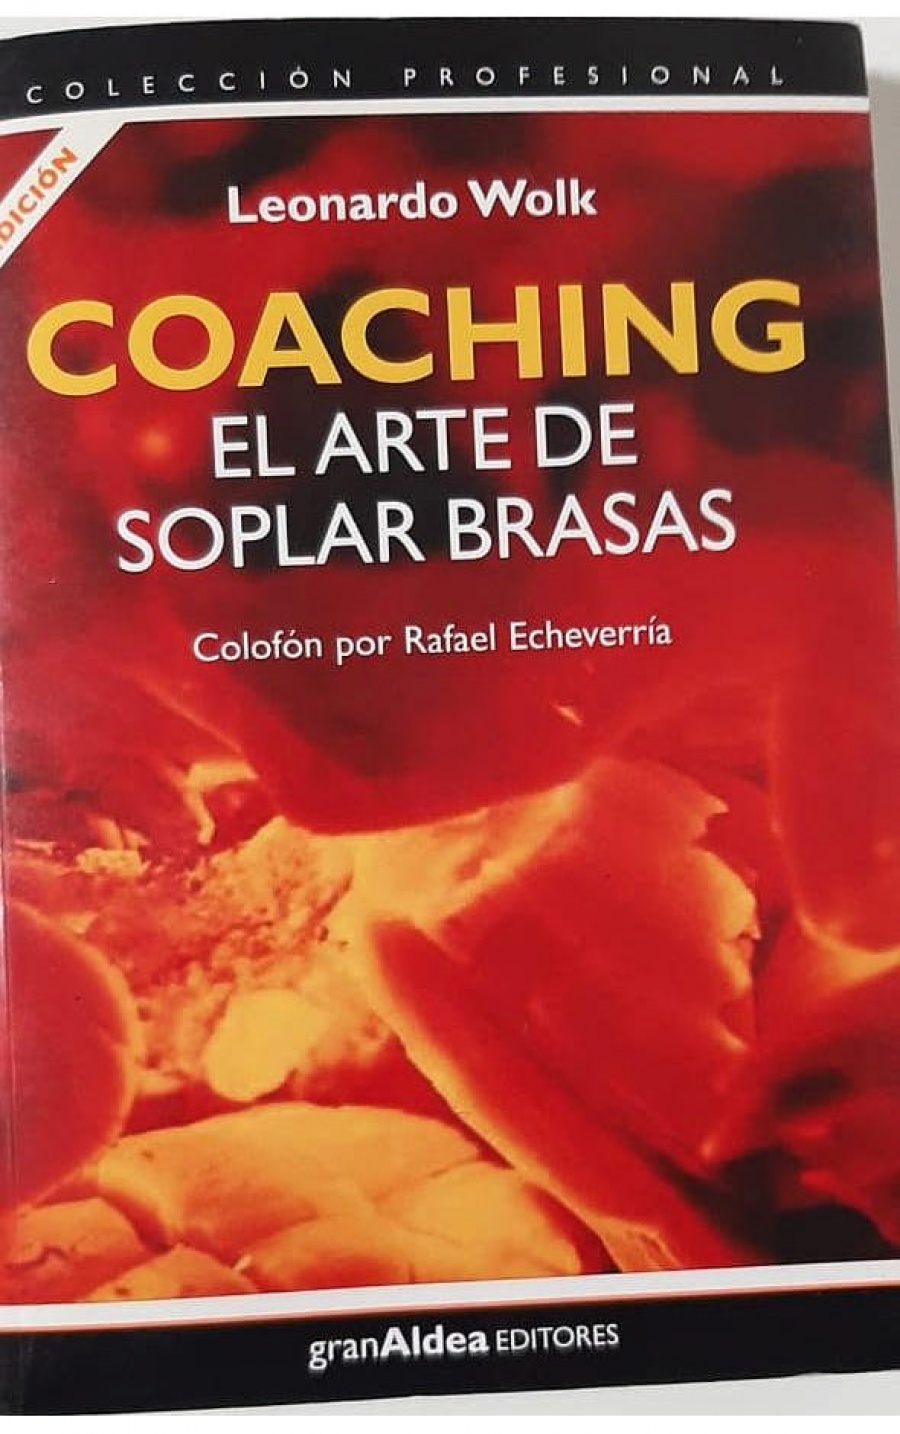 COMBO: COACHING EL ARTE DE SOPLAR BRASAS. COACHING, EL ARTE DE SOPLAR BRASAS EN ACCION. COACHING PARA COACHES. TEORIA Y PRACTICA DE LA SUPERVISION